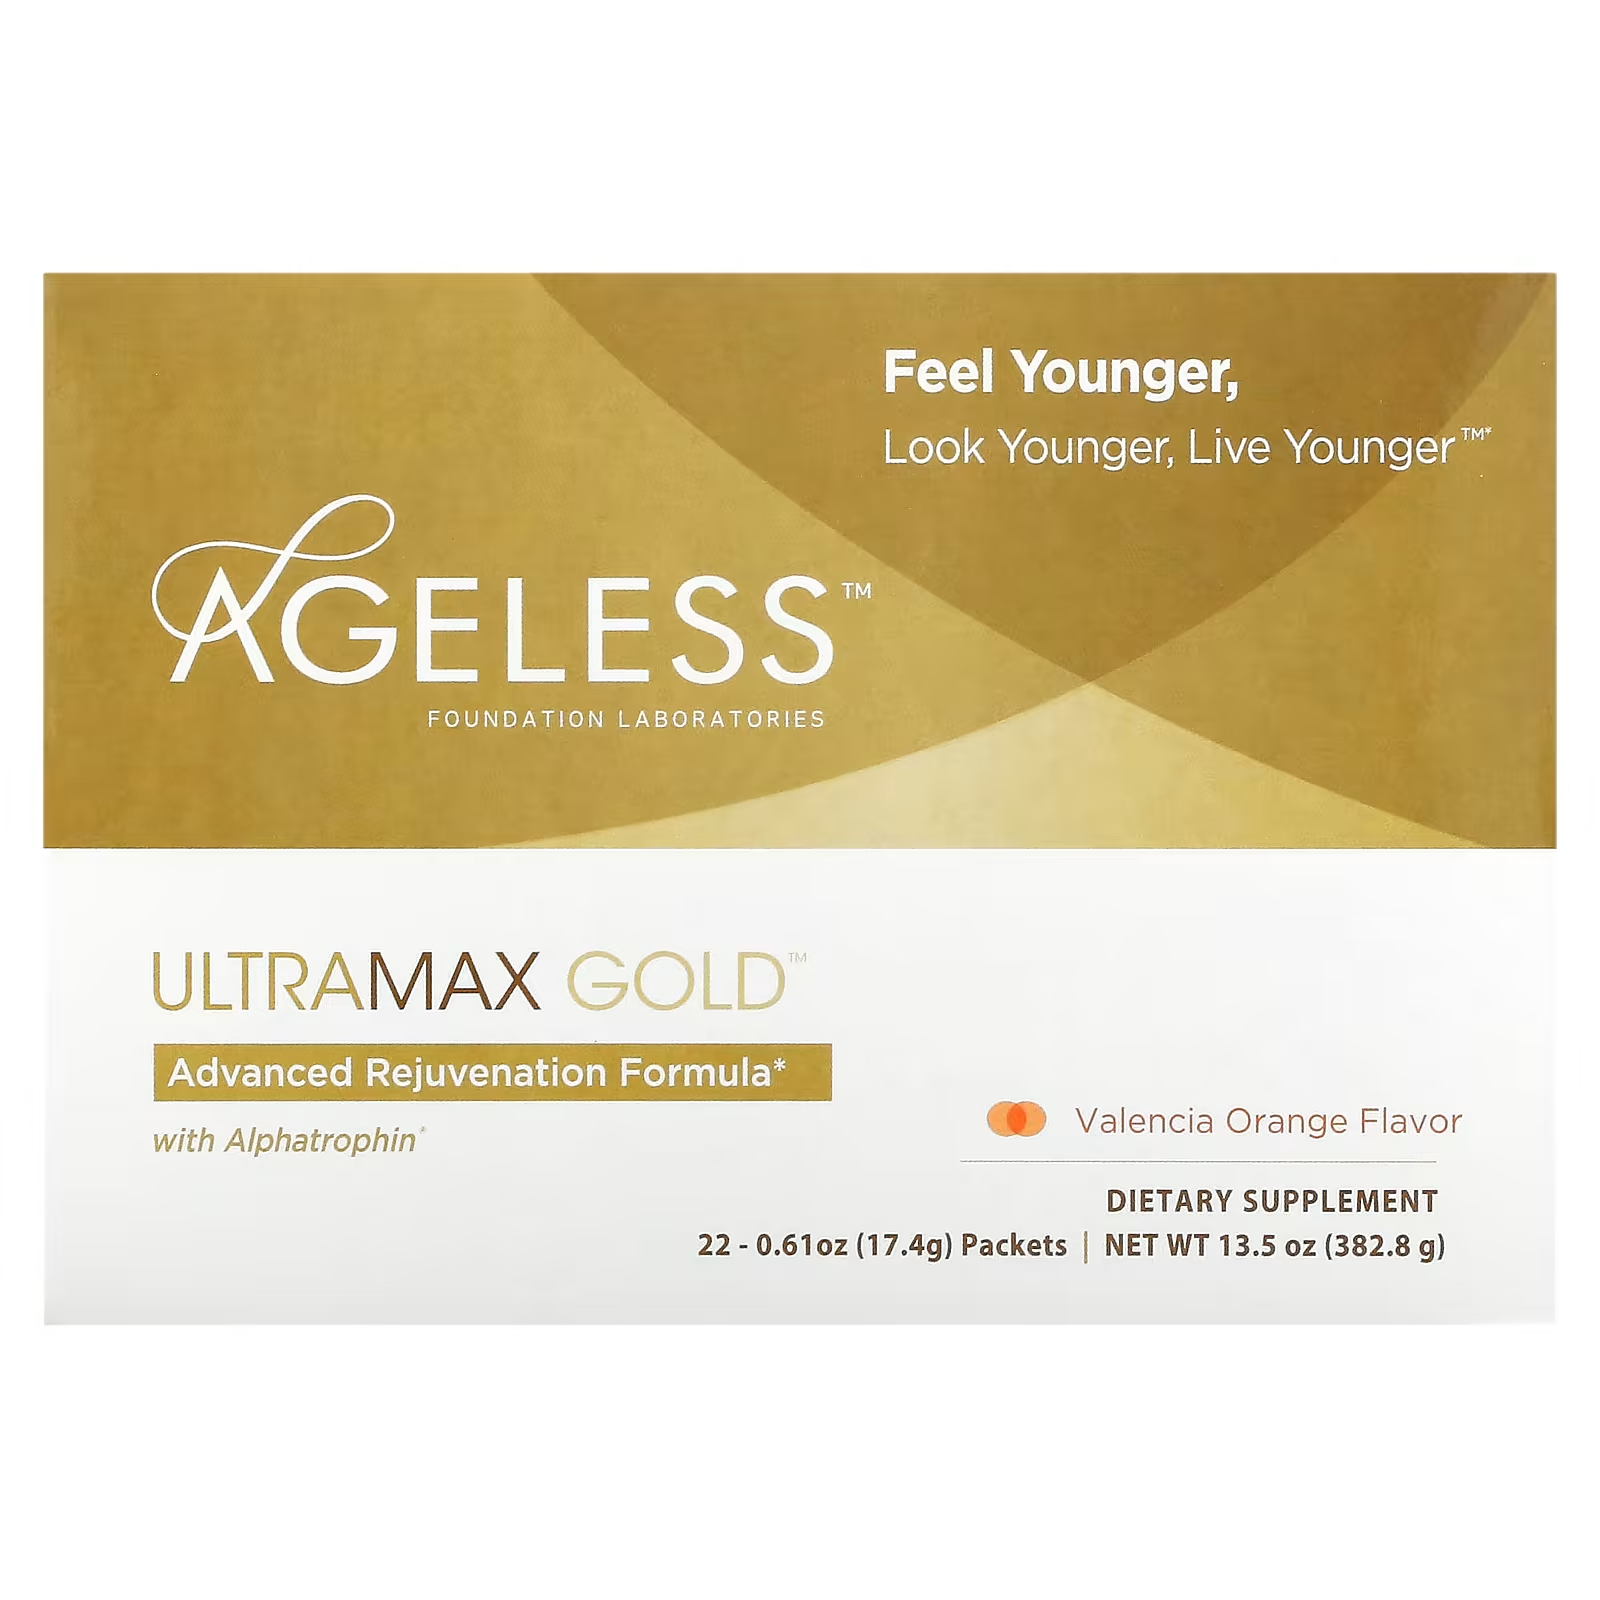 цена Усовершенствованная формула омоложения Ageless Foundation Laboratories UltraMax Gold с альфатрофином, 22 пакета по 17,4 г